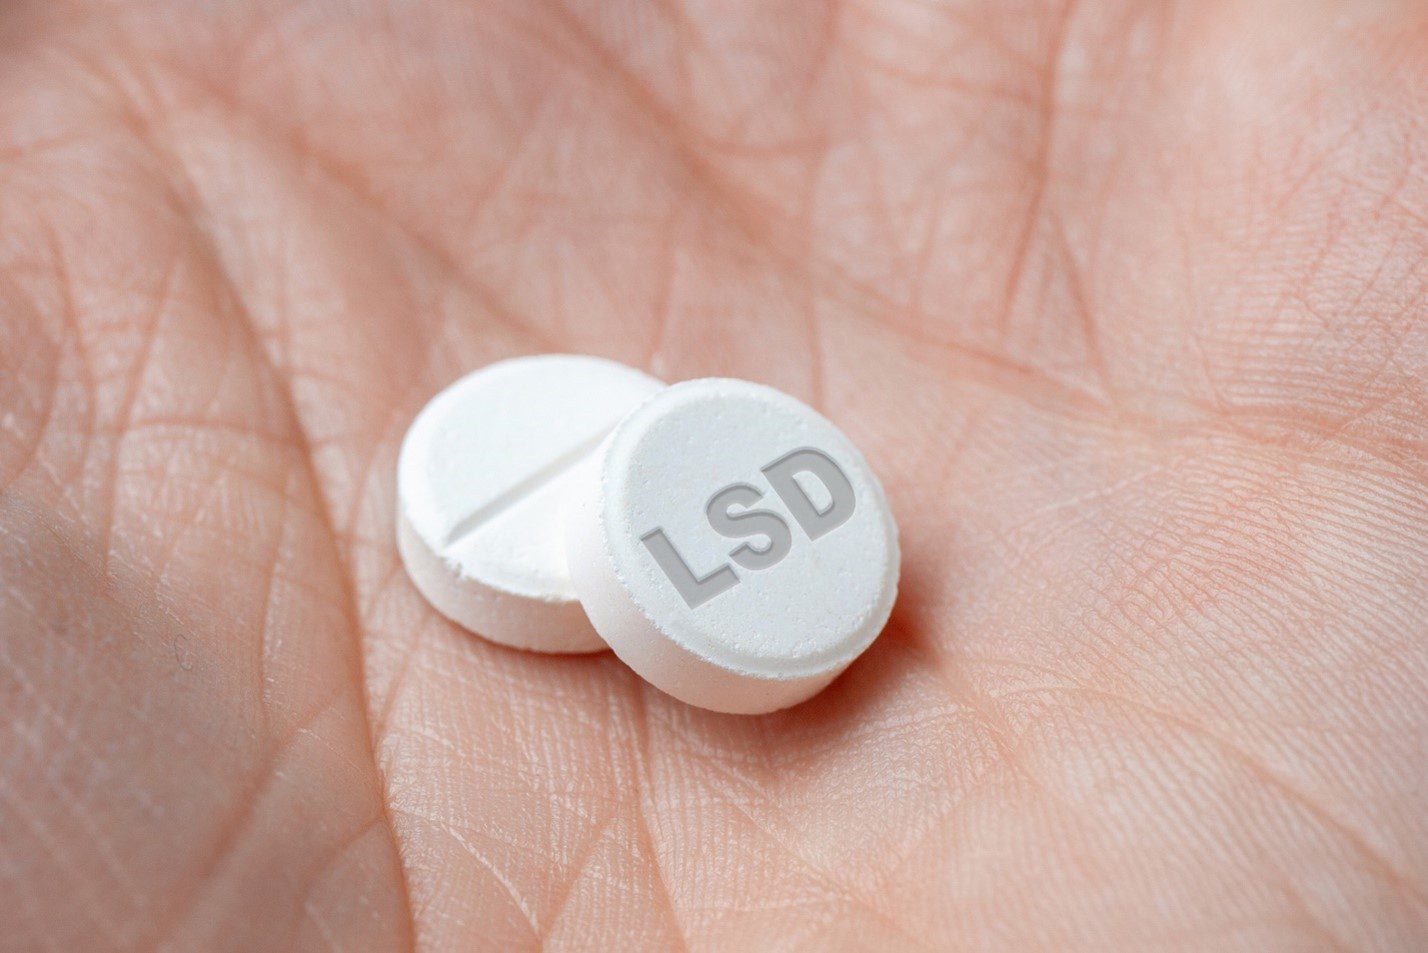 LSD/Acid